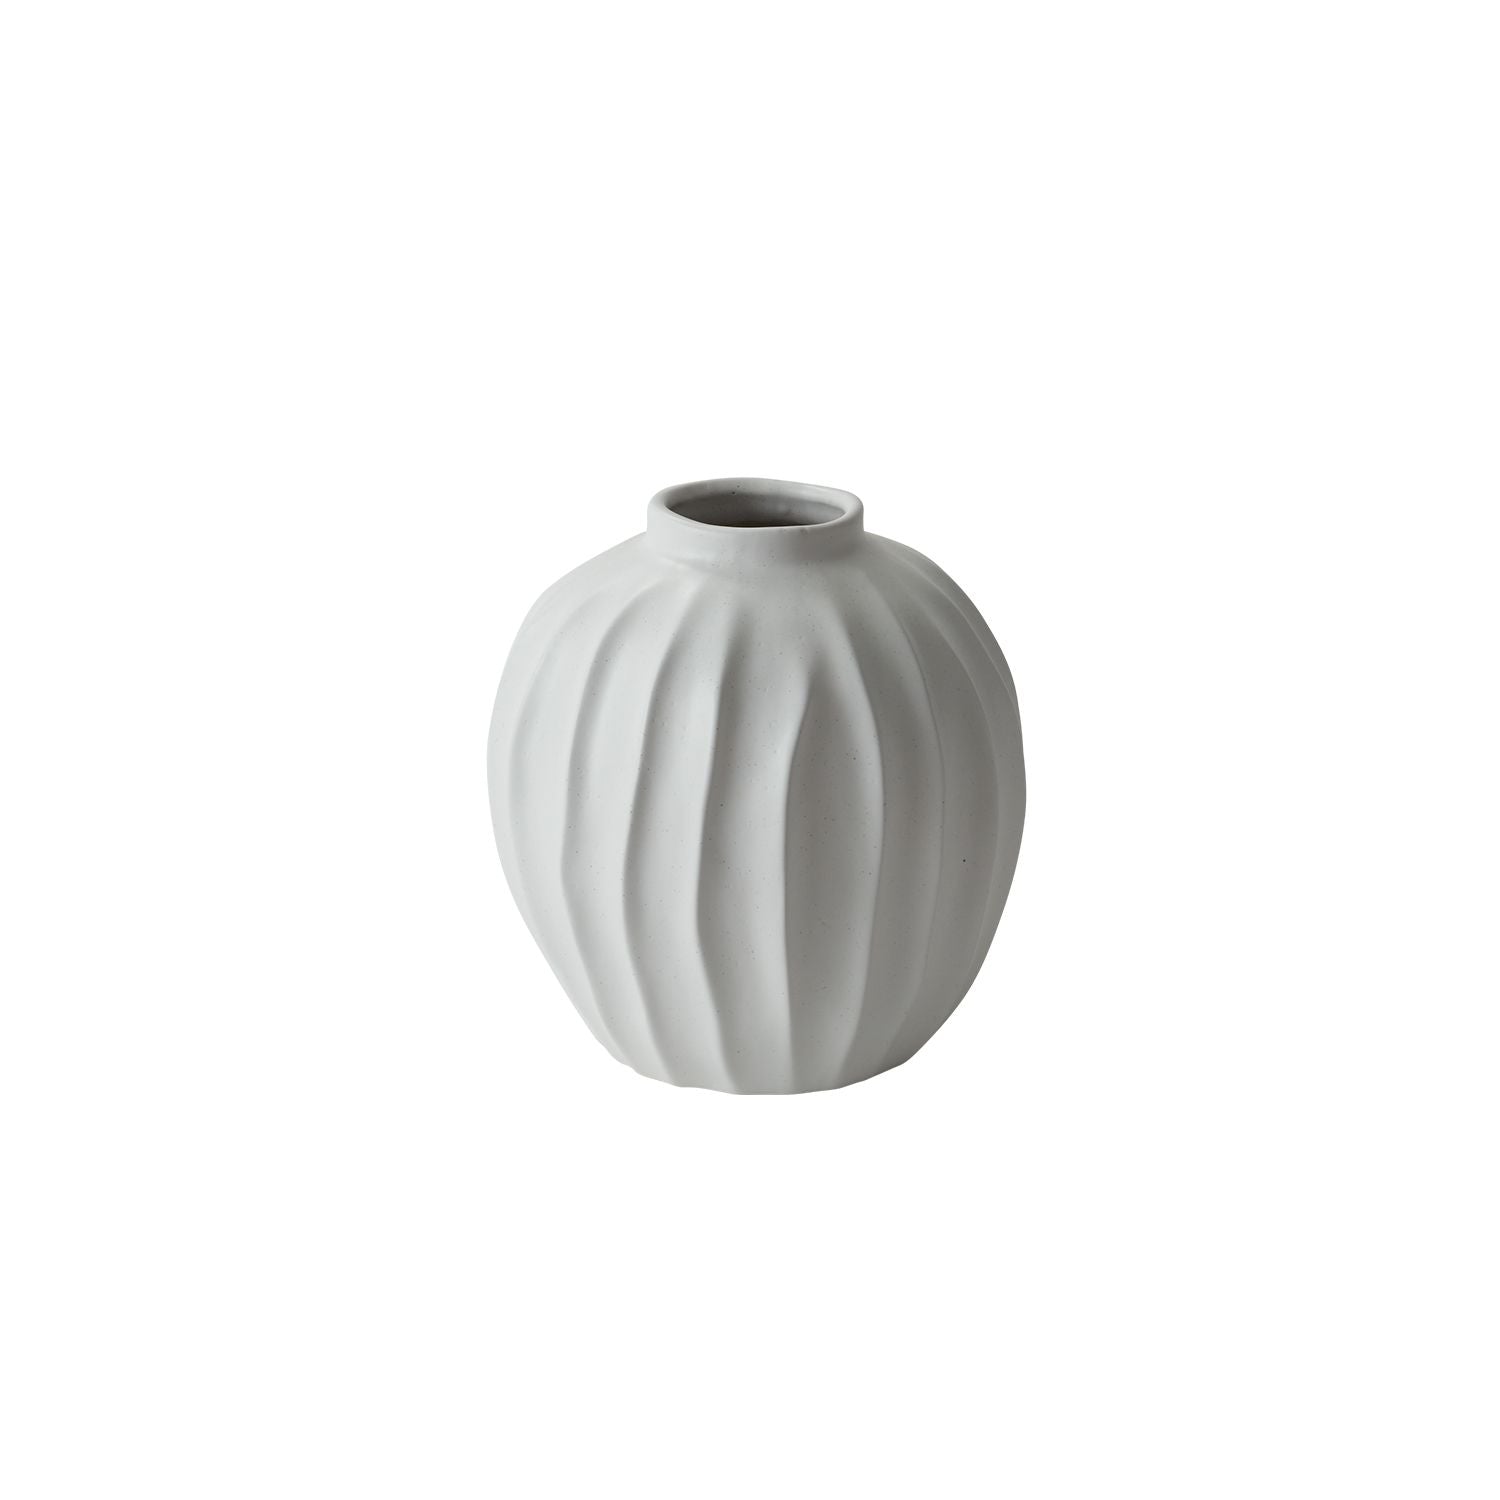 White Ribbed Vase (2 Sizes)